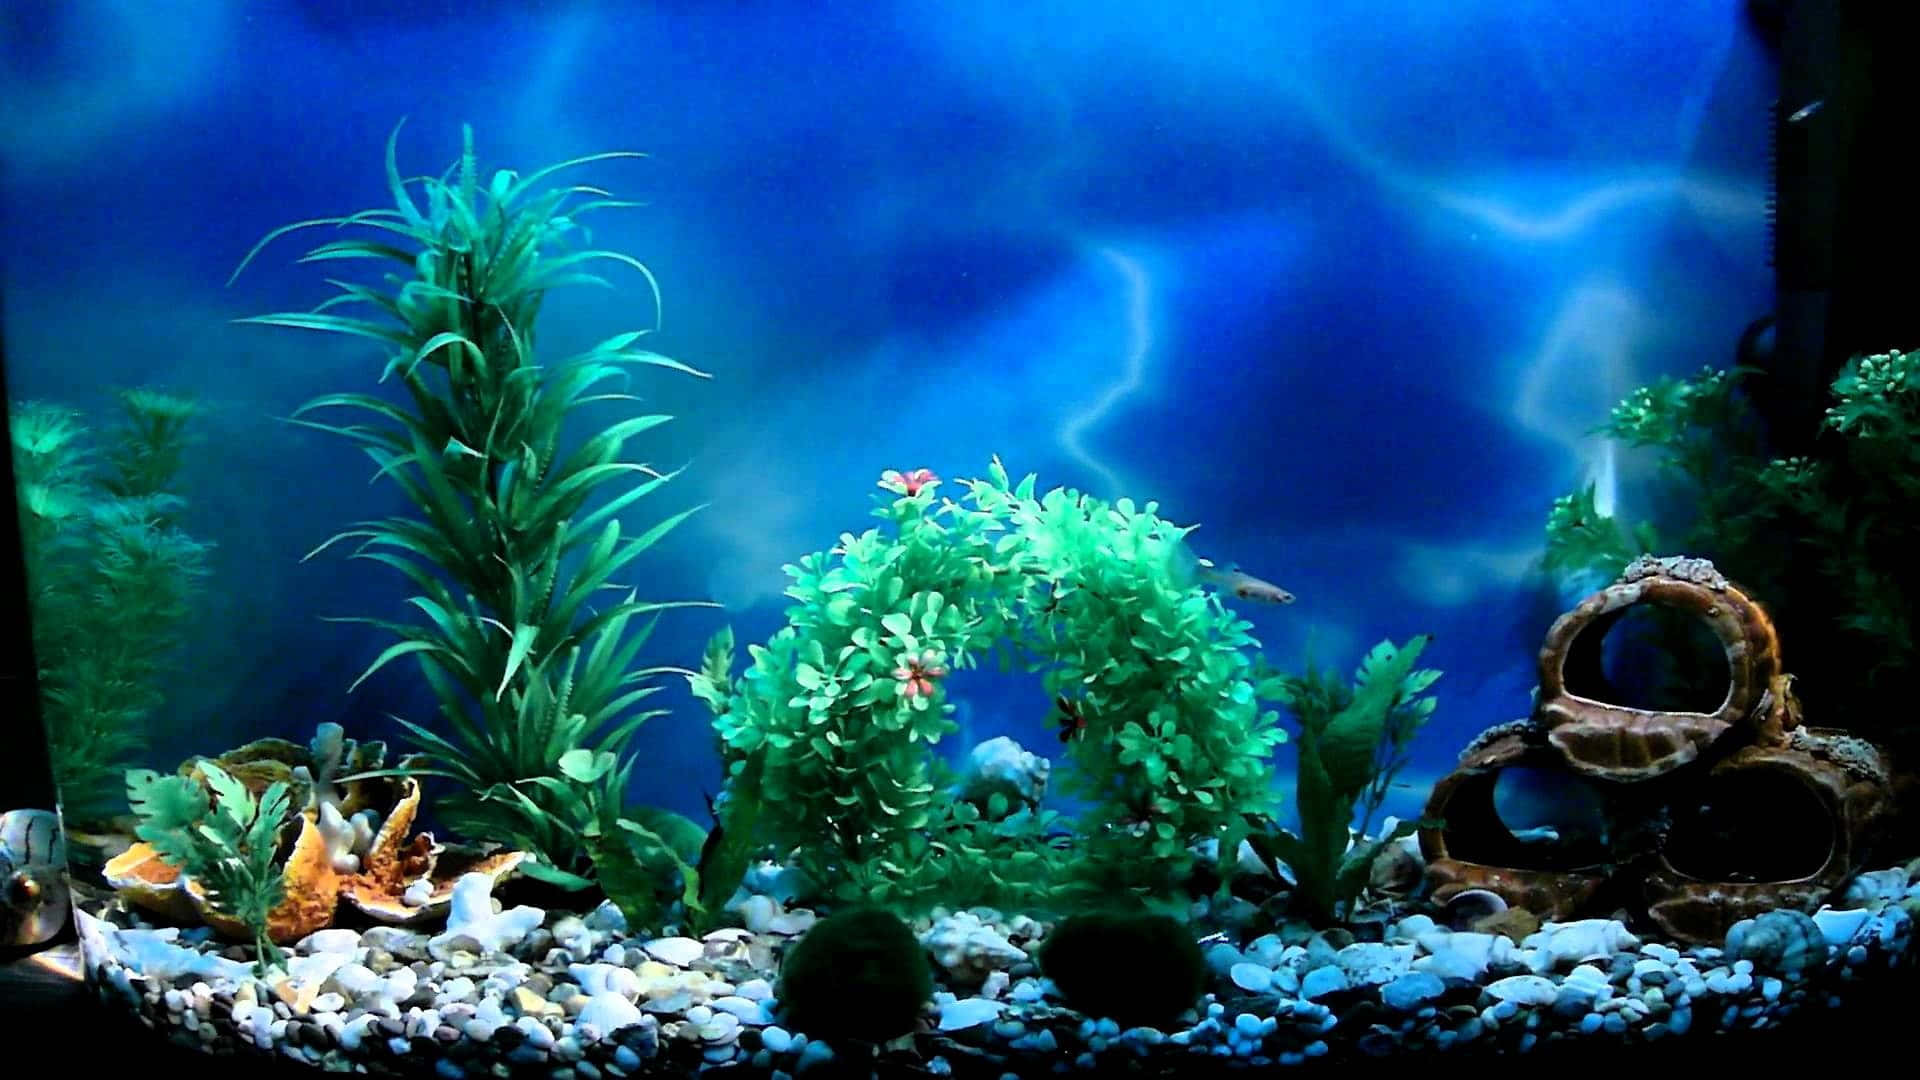 Entdeckeeine Faszinierende Unterwasserwelt In Diesem Beeindruckenden Aquarium